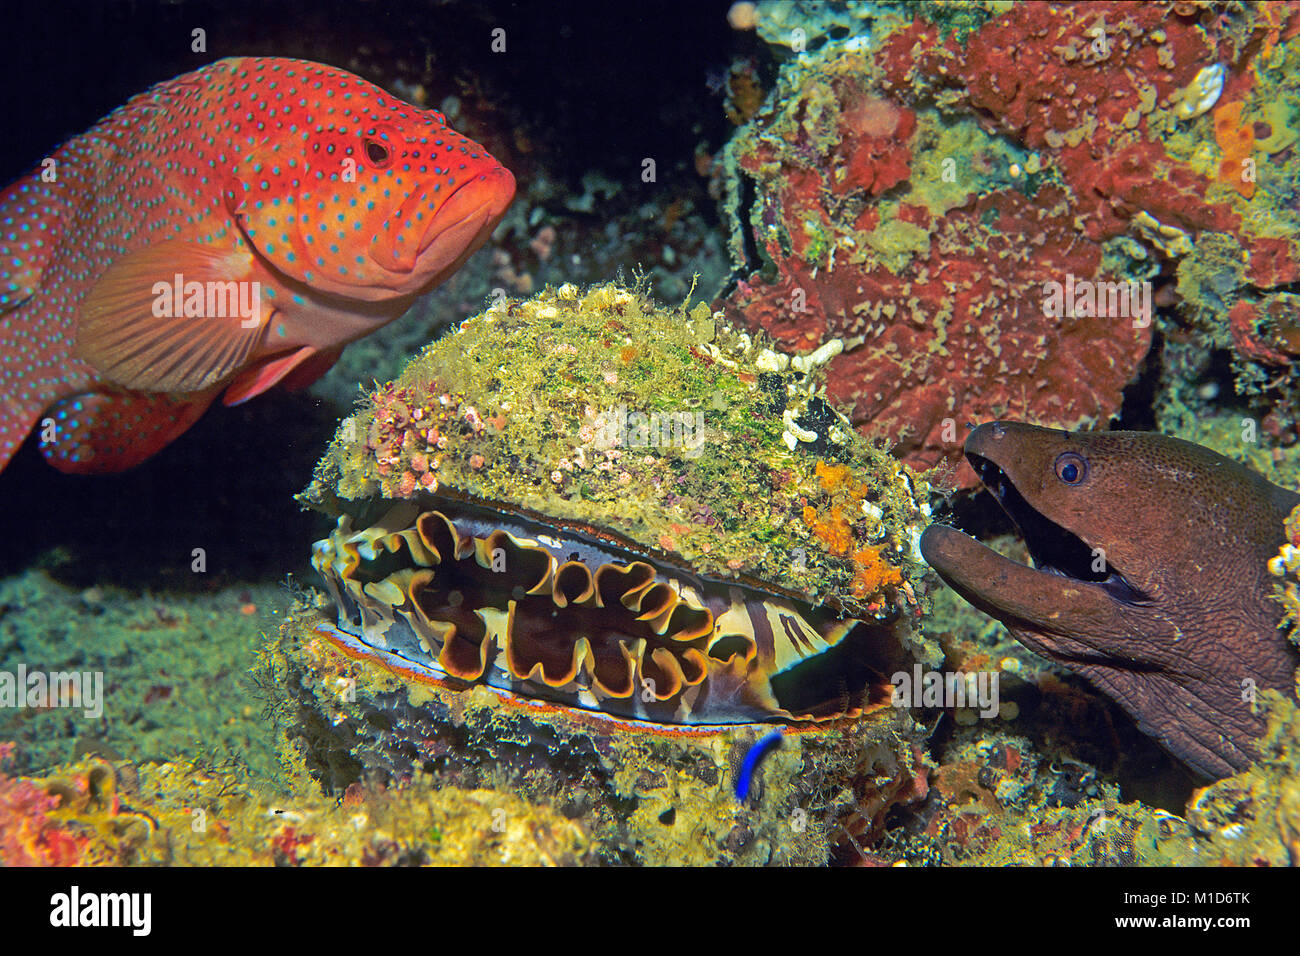 Coral Grouper (Cephalopholis Miniata), Thorny Oyster (Spondylos varius) und Giant Moray (Gymnothorax javanicus) an einem Korallenriff, Malediven Inseln Stockfoto